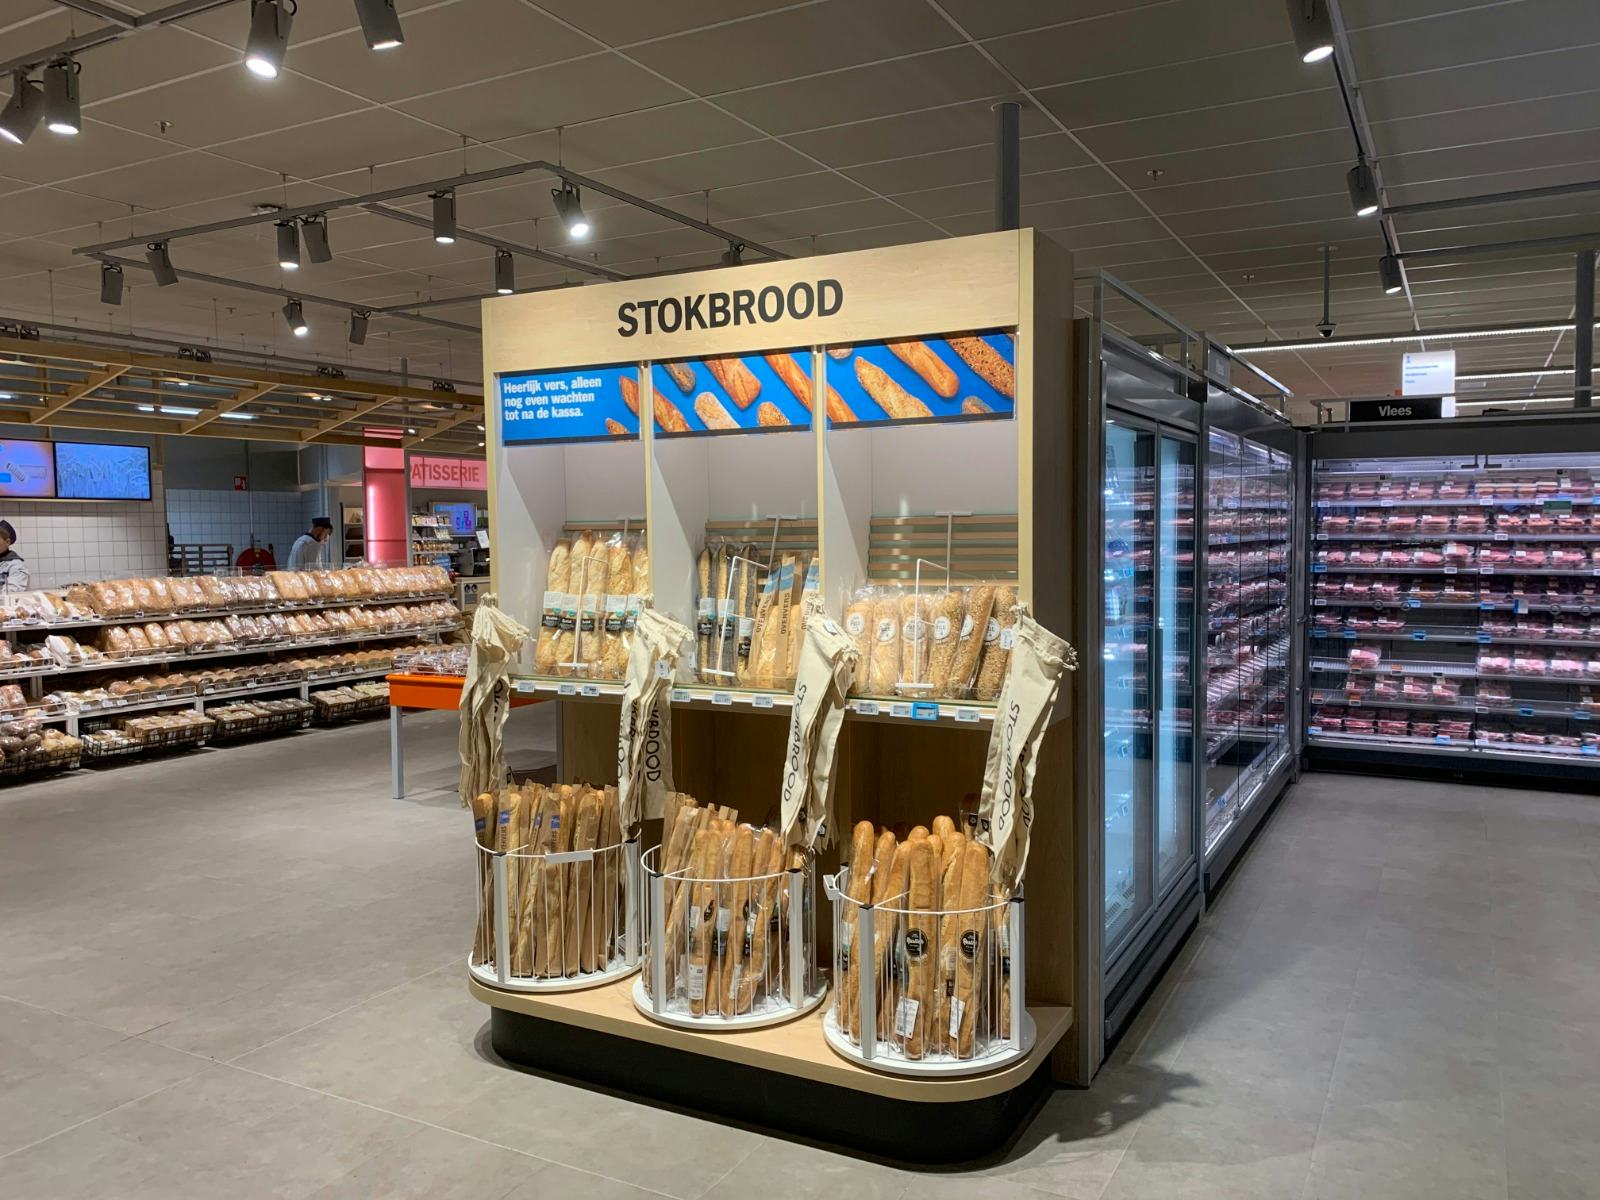 De fraaie stokbrood-display bij de AH XL in Nijmegen.Foto: Distrifood